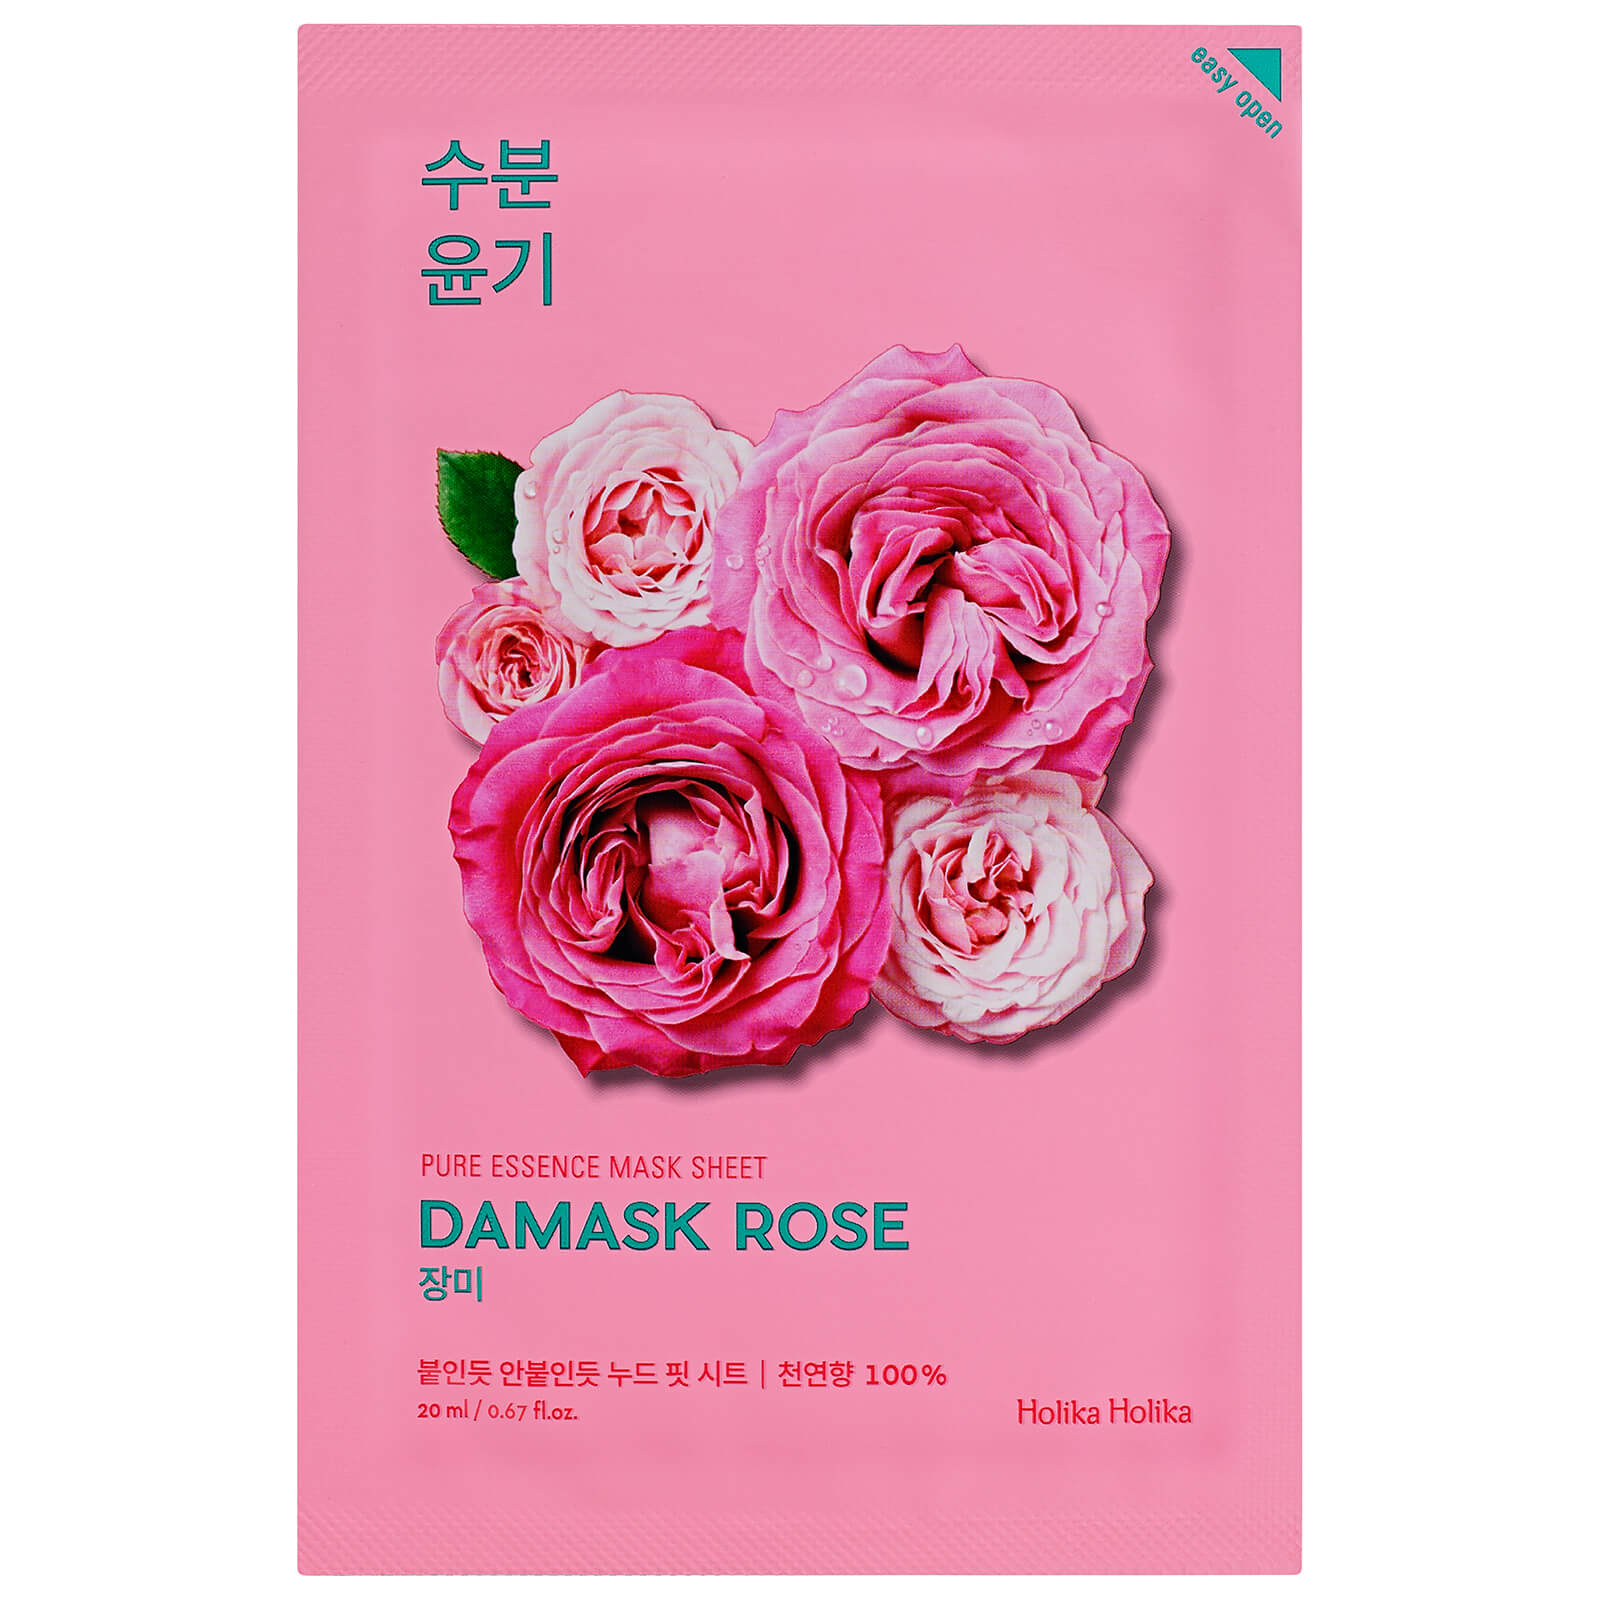 Holika Holika Pure Essence Mask Sheet 20ml (Various Options) - Damask Rose